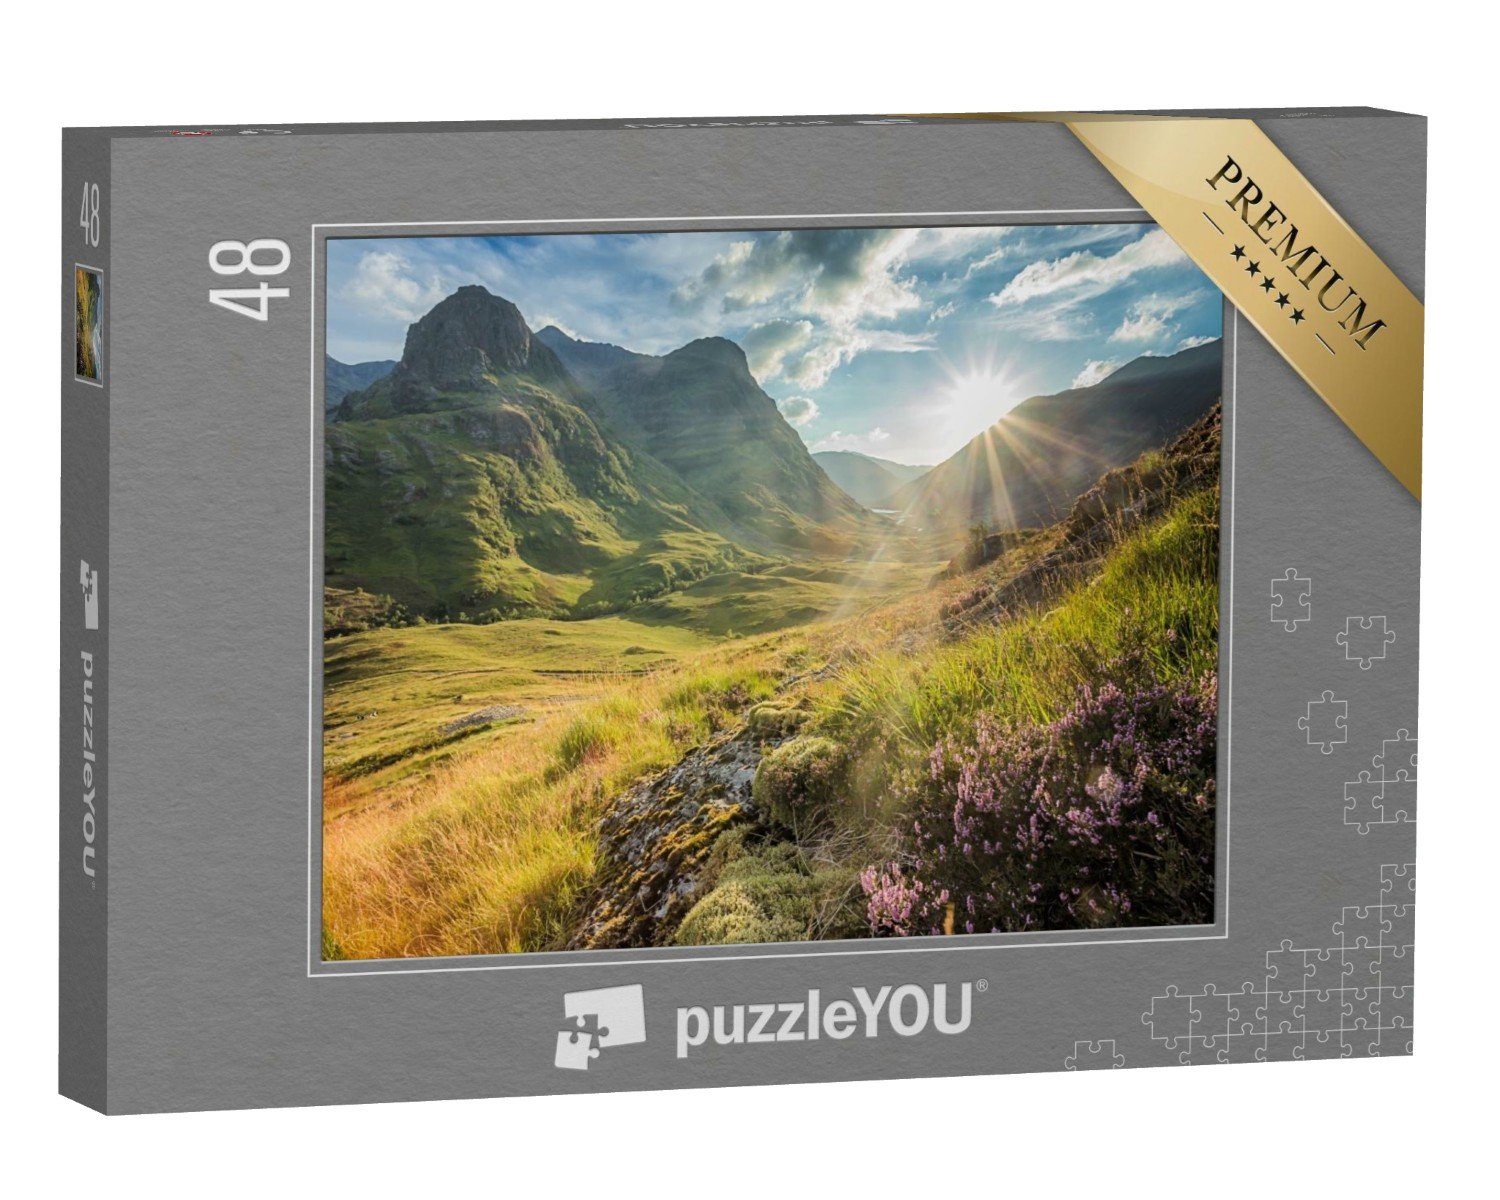 puzzleYOU Puzzle Berge von Glencoe, Highlands, Puzzleteile, Schottland puzzleYOU-Kollektionen schottische 48